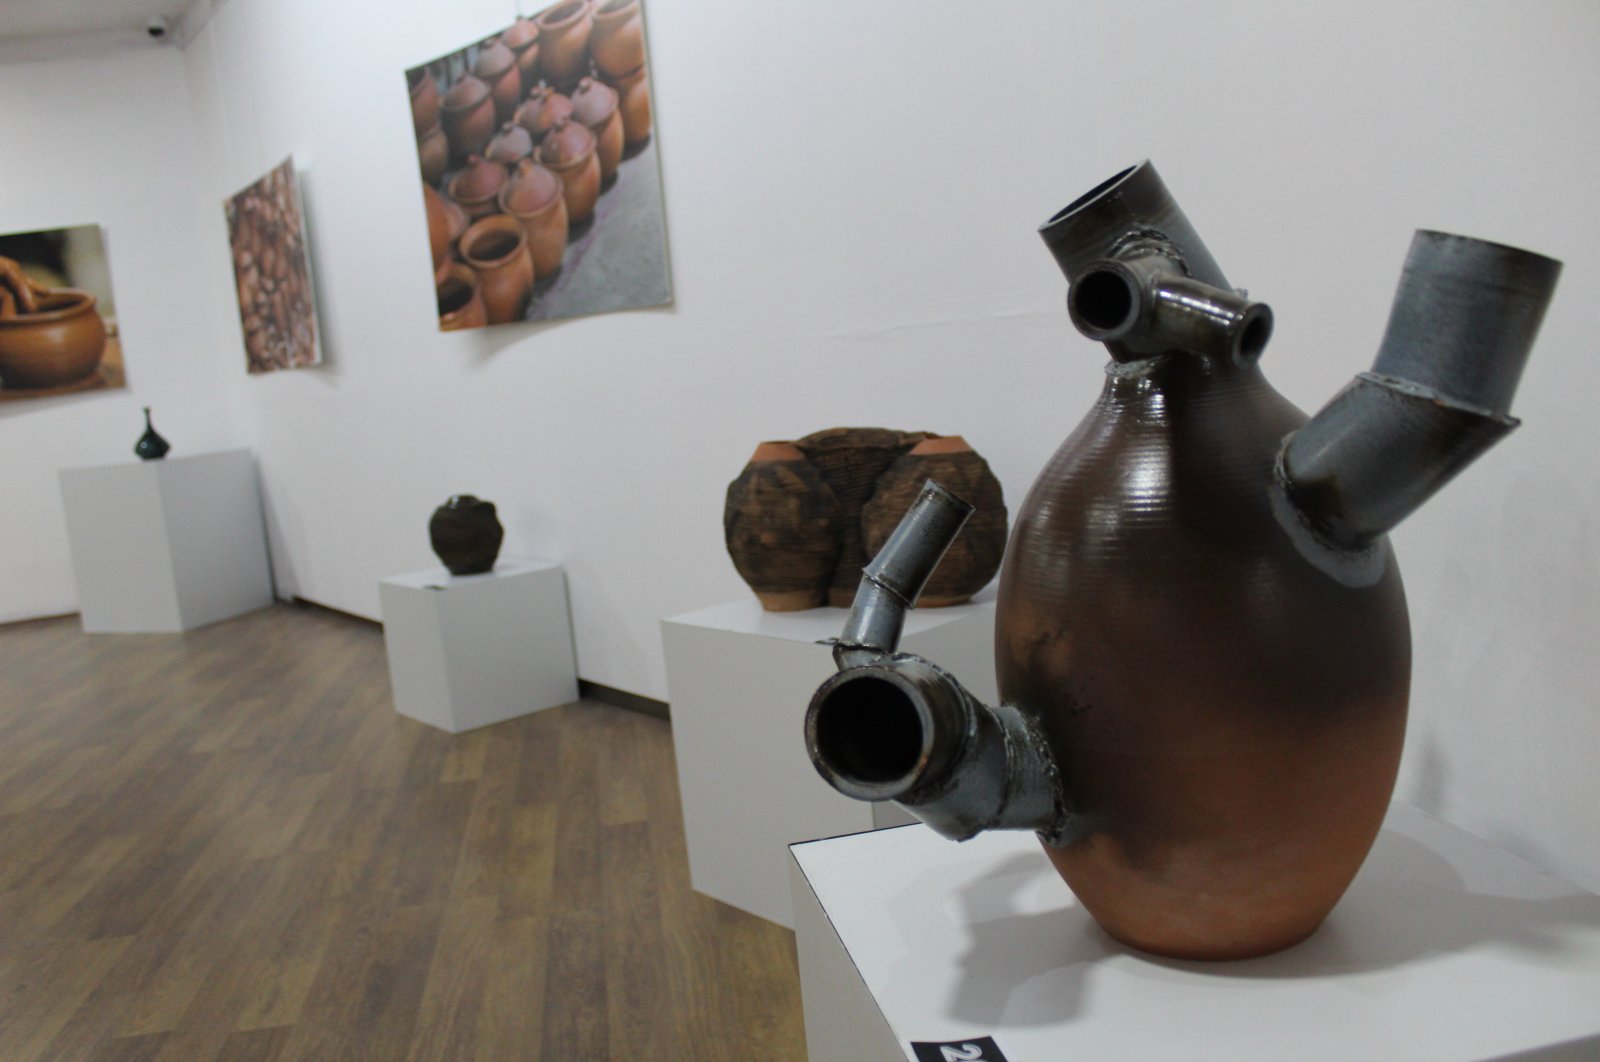 Nol limbah: Keramik Turki dengan cerdik mengubah limbah menjadi karya seni